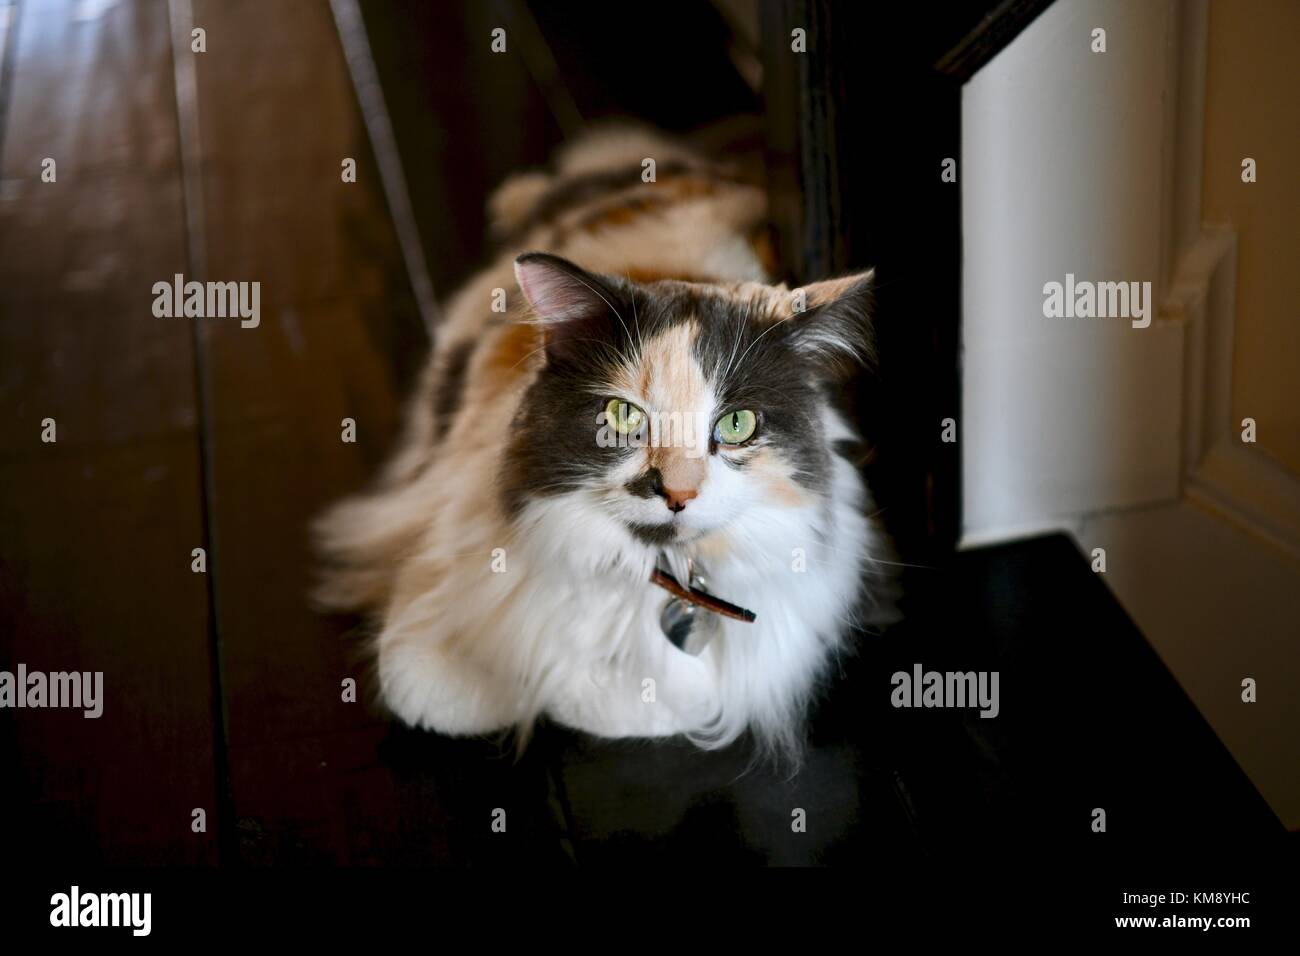 Gatto calico che si posa nella scala Foto Stock